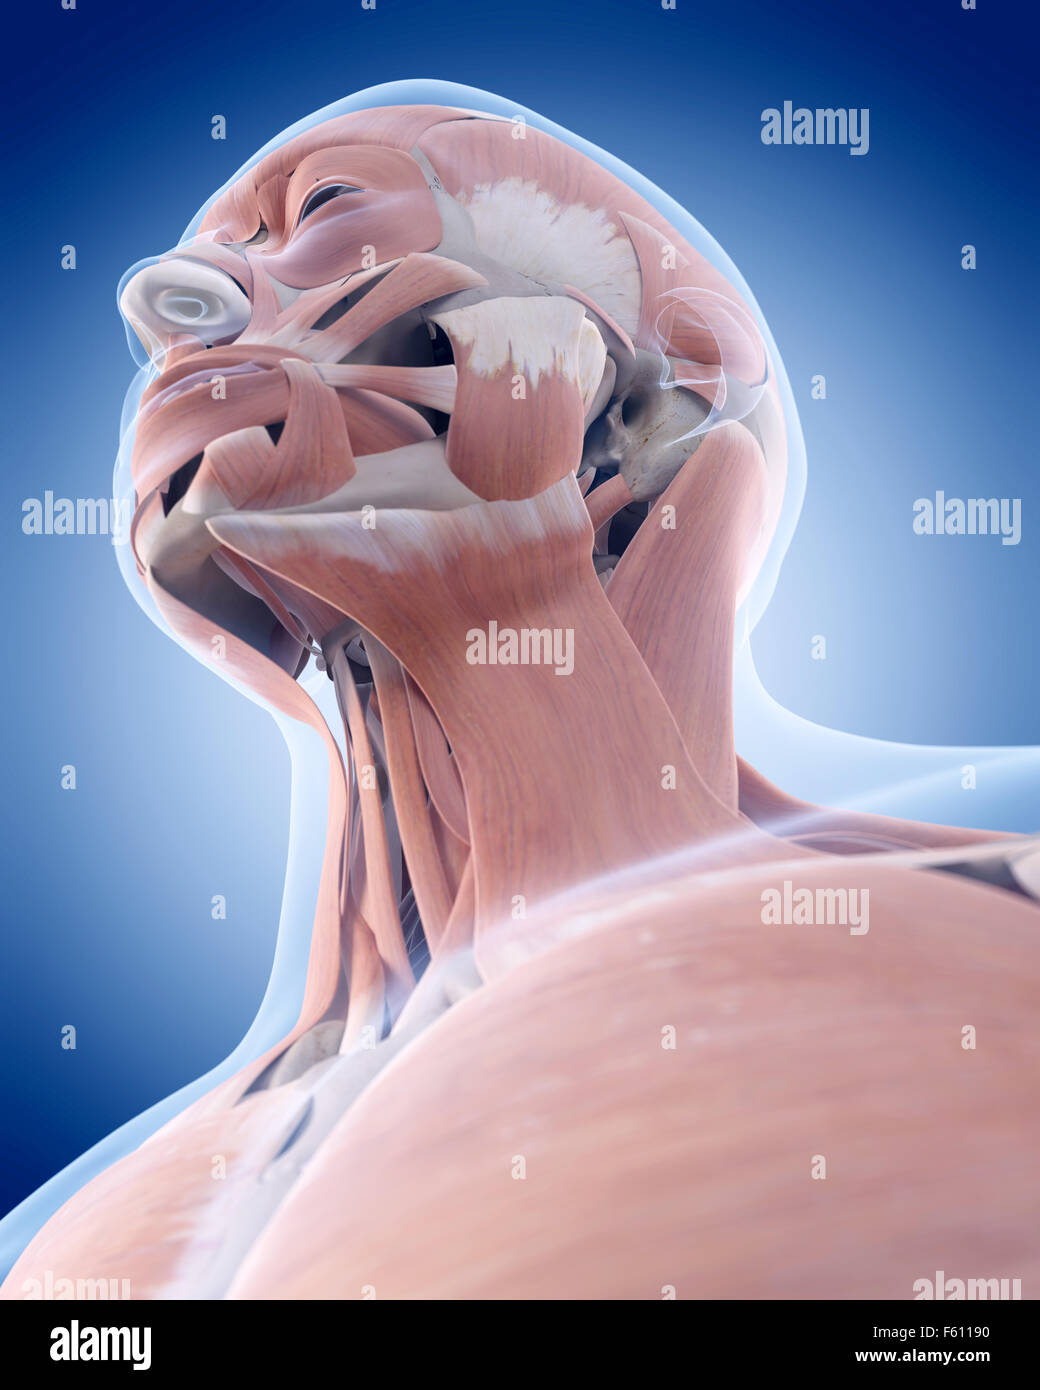 Dal punto di vista medico illustrazione accurata dei muscoli del collo Foto Stock